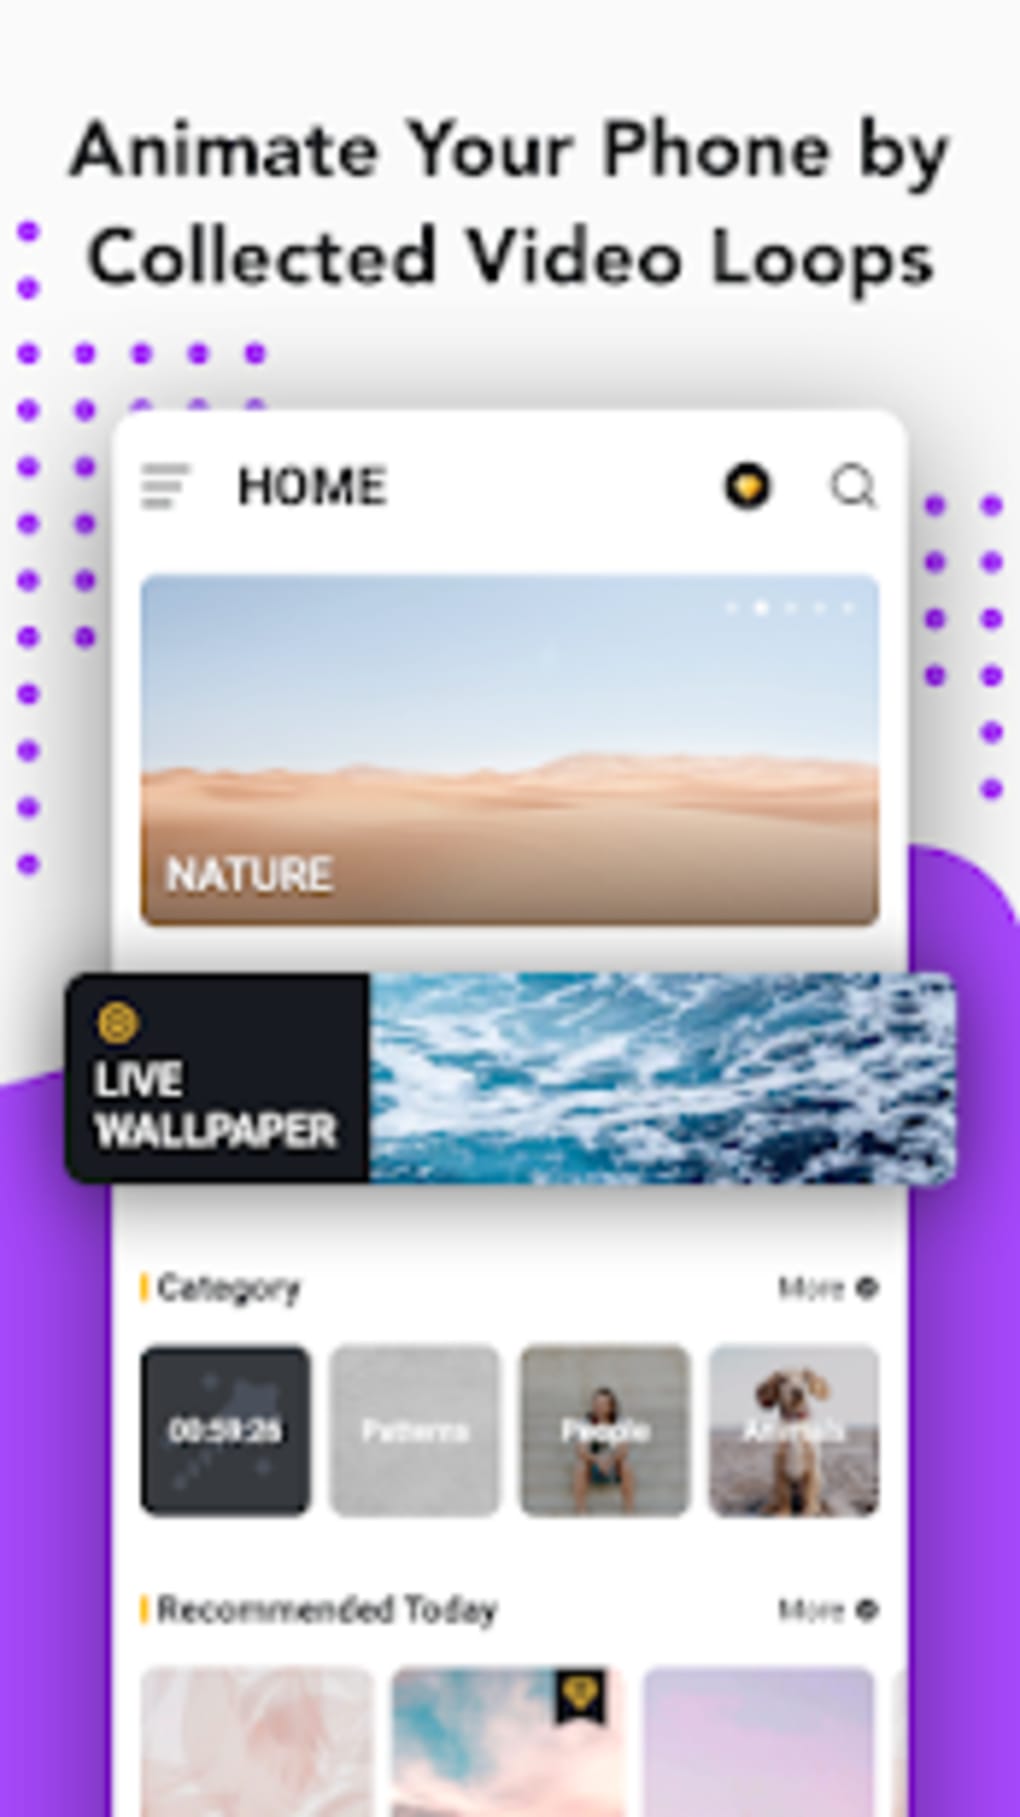 HD Live Wallpaper: Với HD Live Wallpaper, bạn sẽ có cơ hội đắm mình vào thế giới đầy màu sắc của những hình ảnh đẹp như mơ. Sử dụng hình nền cực kì chân thực, sống động để tạo ra trải nghiệm thực sự tuyệt vời cho người dùng.